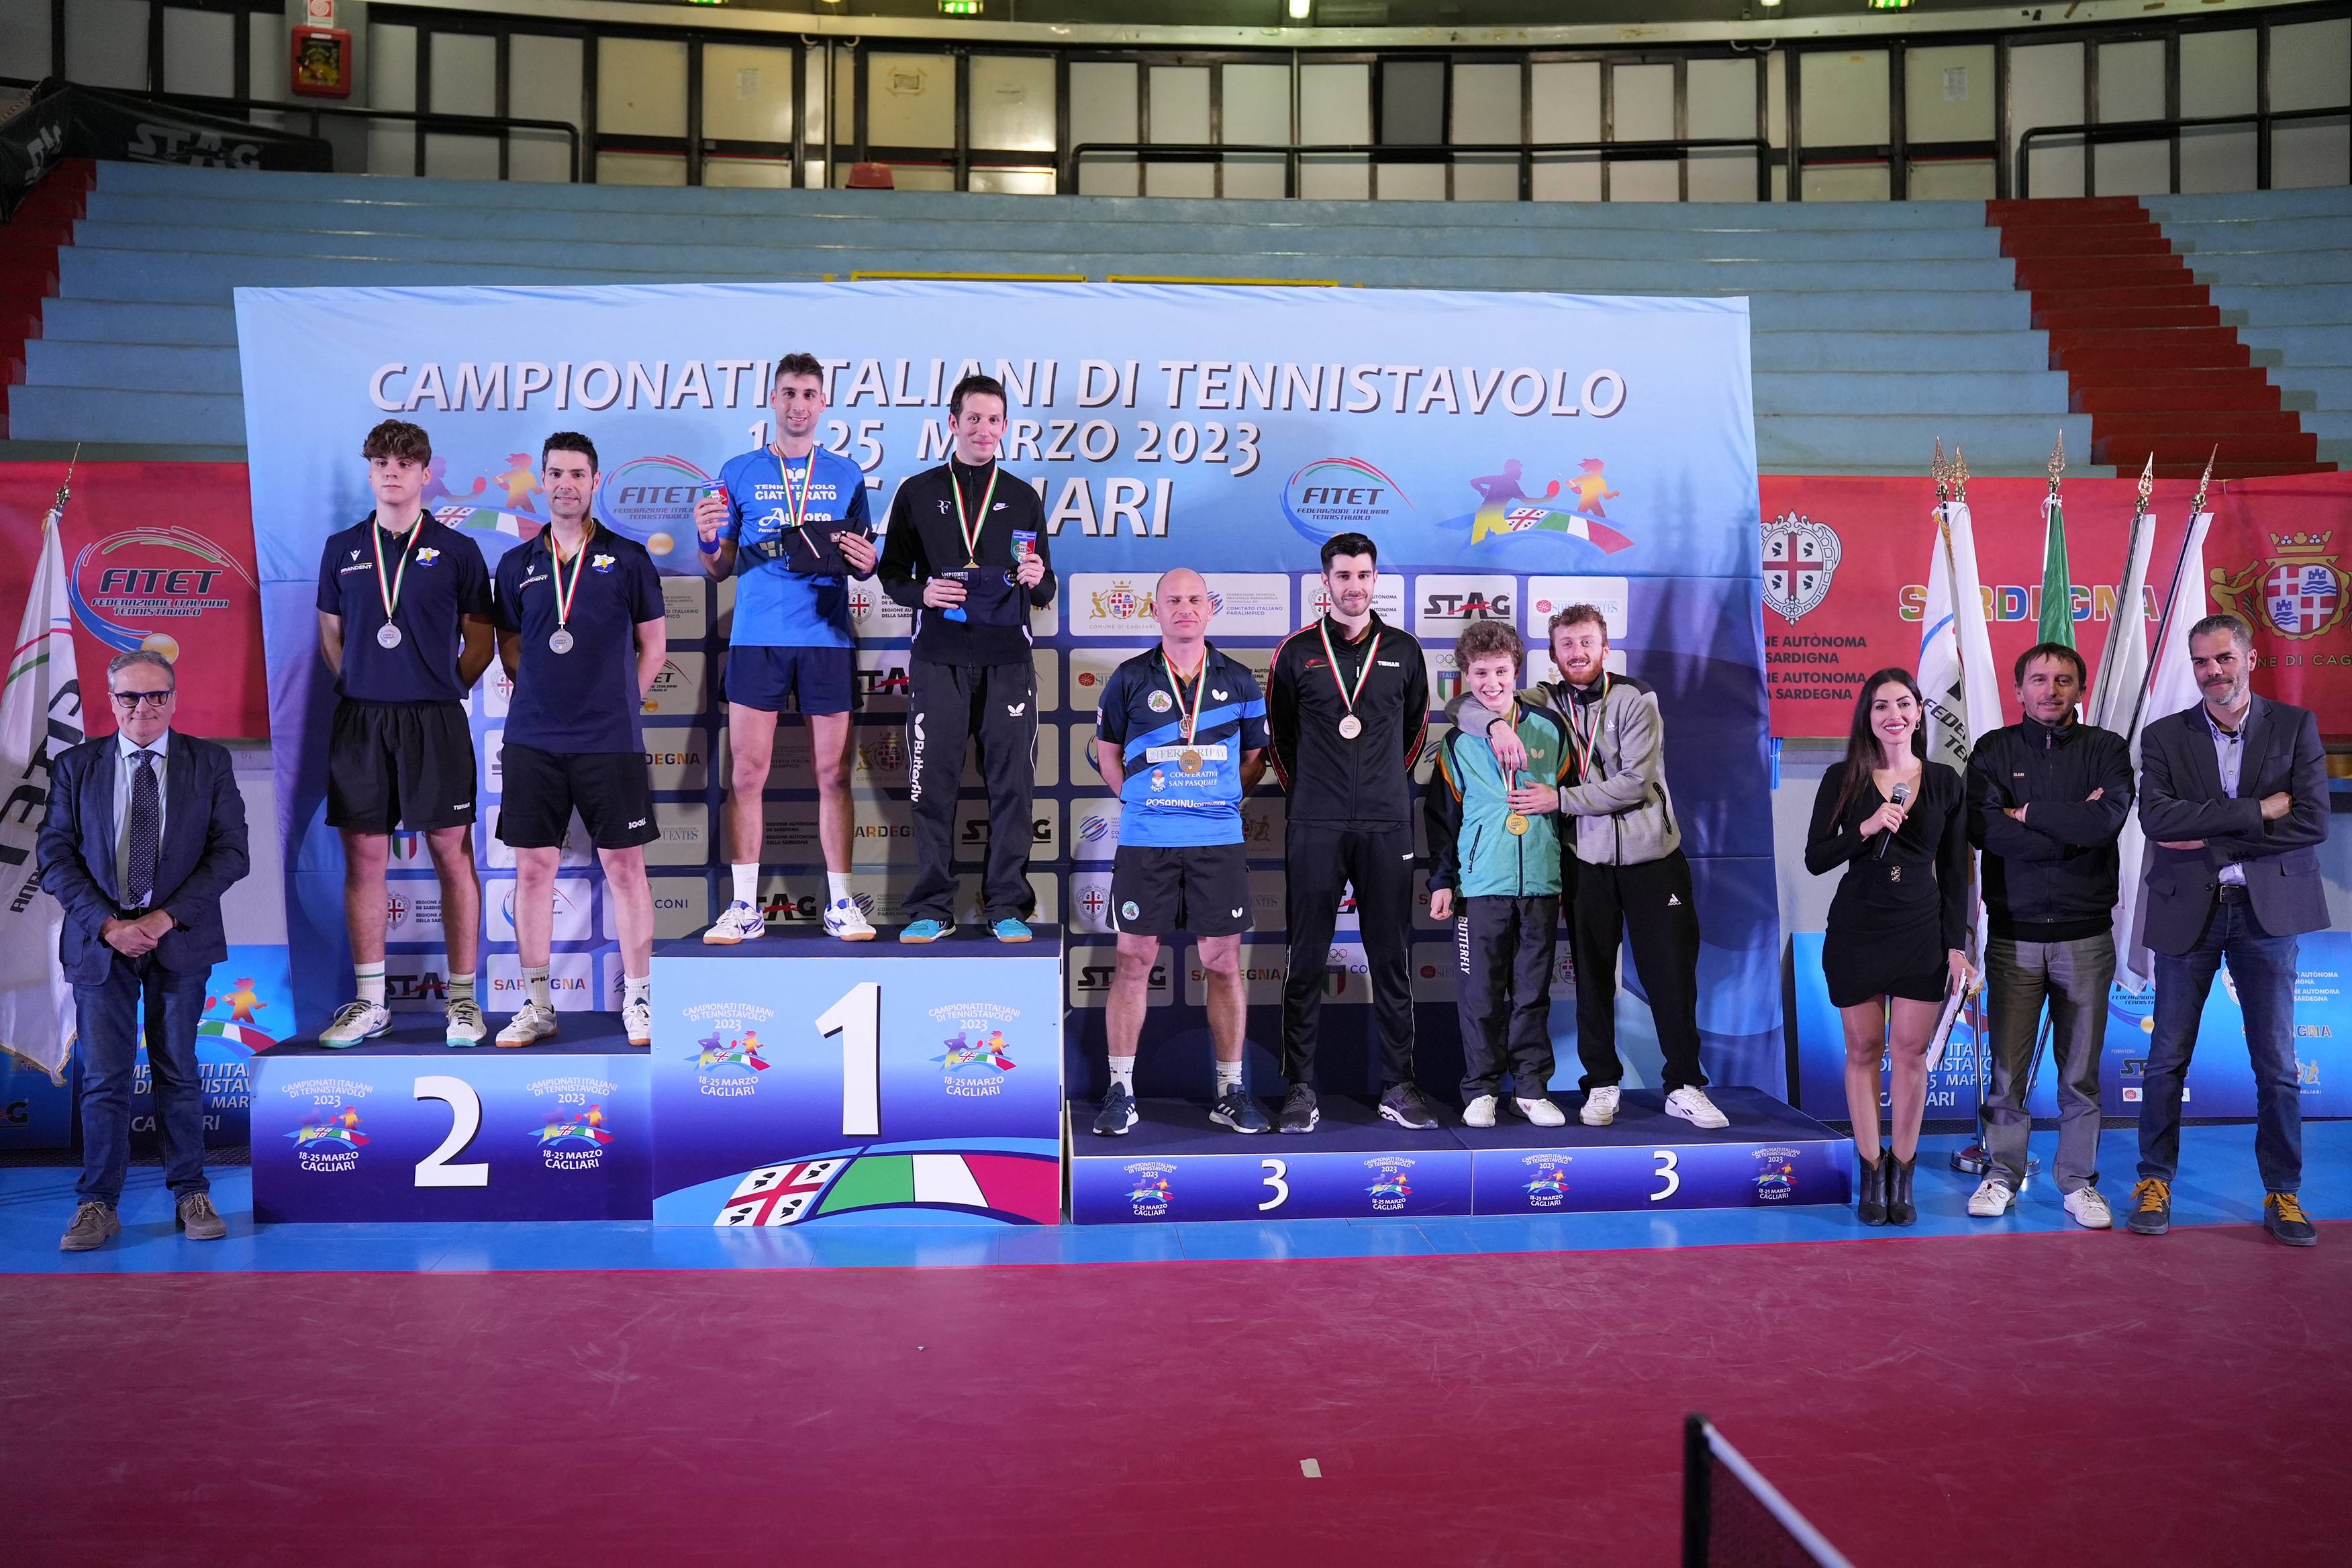 Campionati Italiani di Cagliari 2023 podio del doppio maschile di seconda categoria